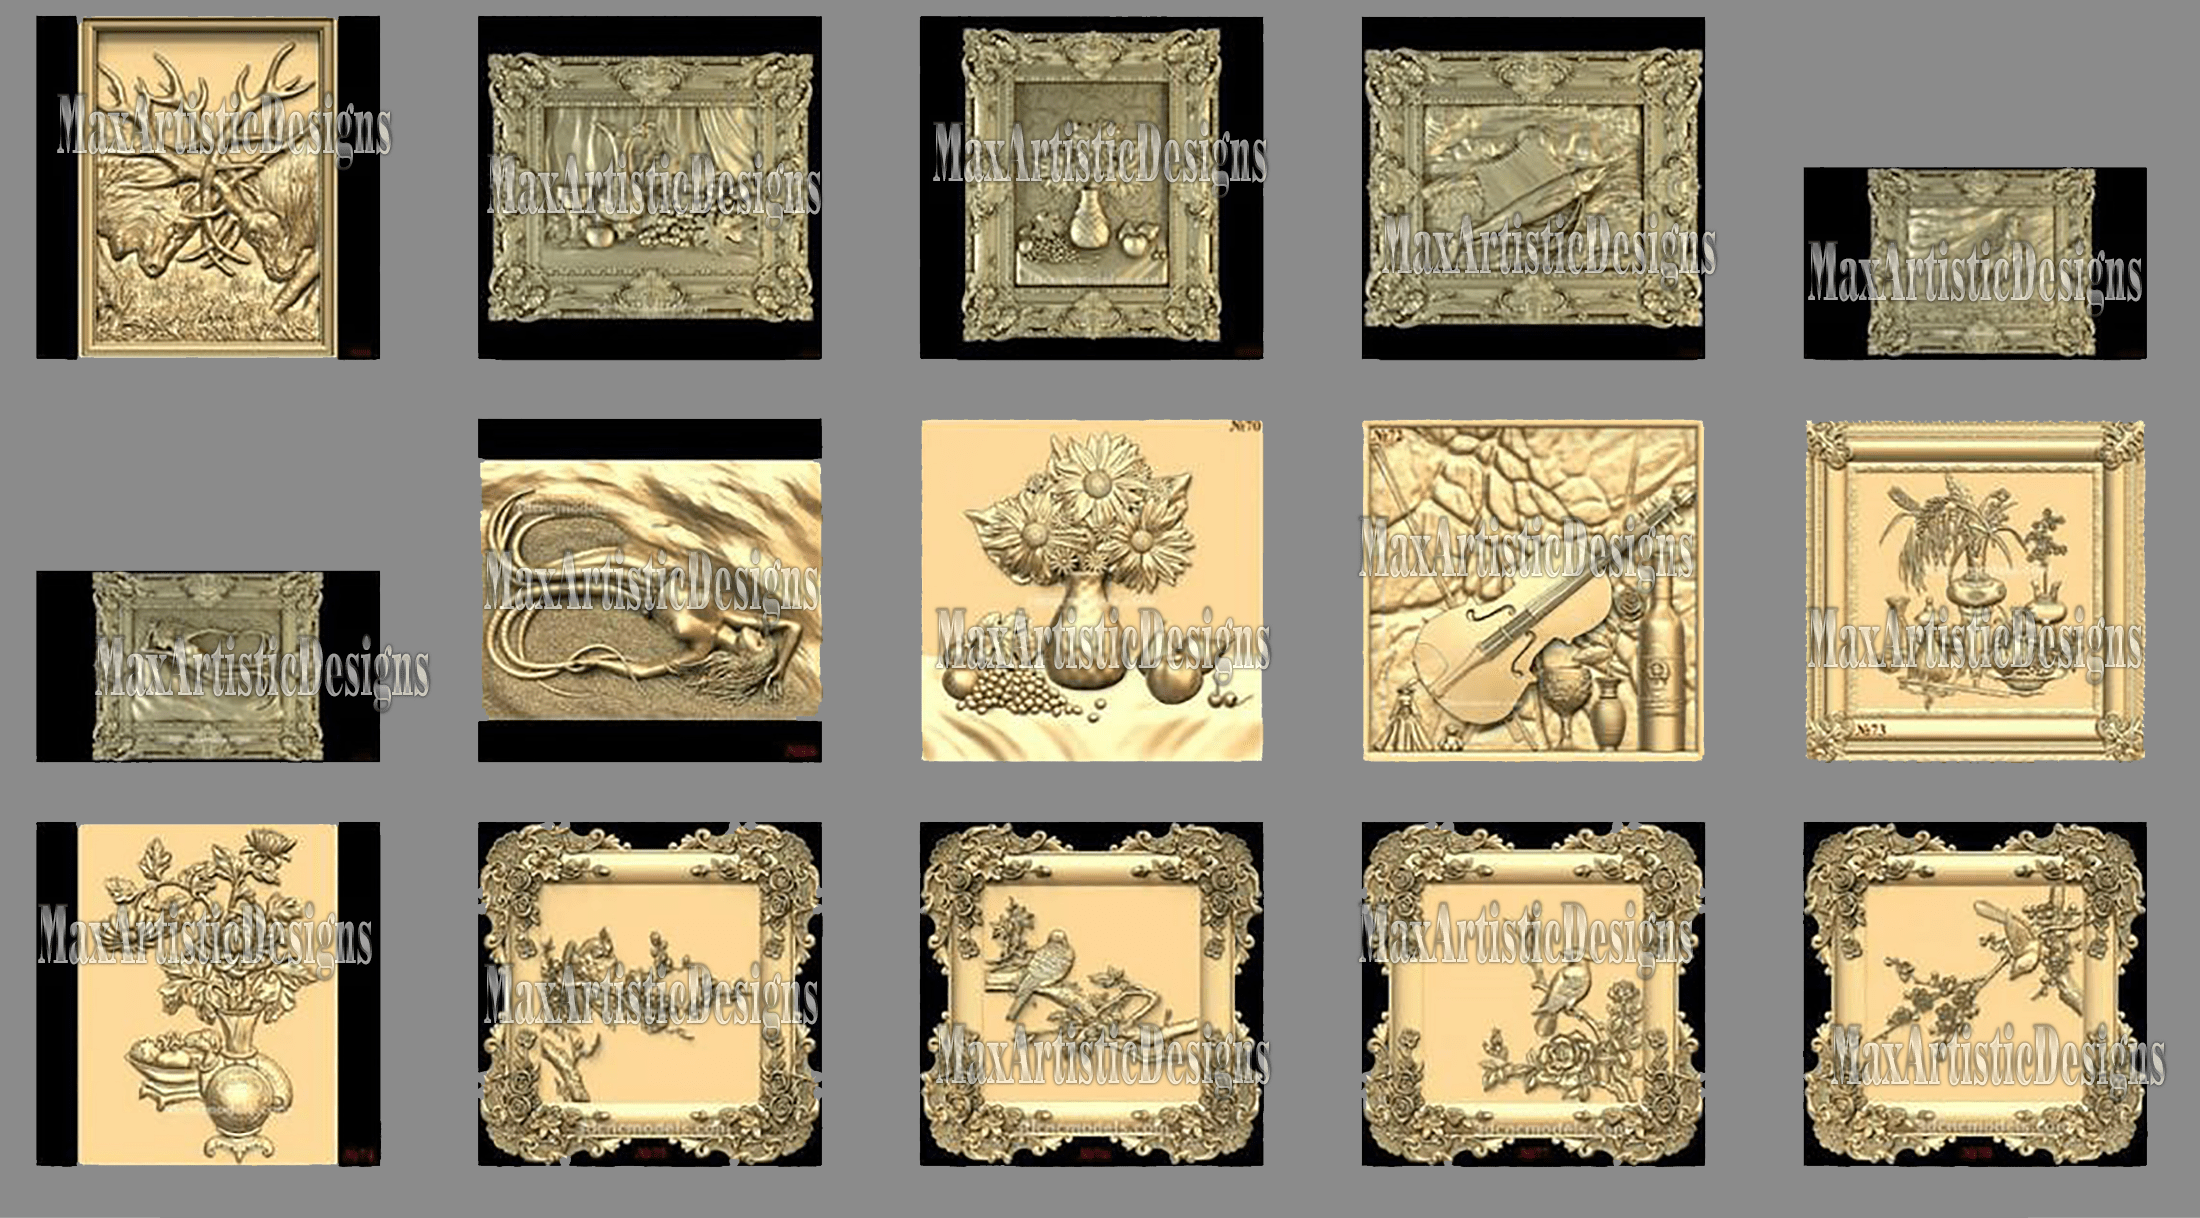 100 modèles 3d stl – « collection bas-relief » pour imprimante cnc artcam 3d aspire